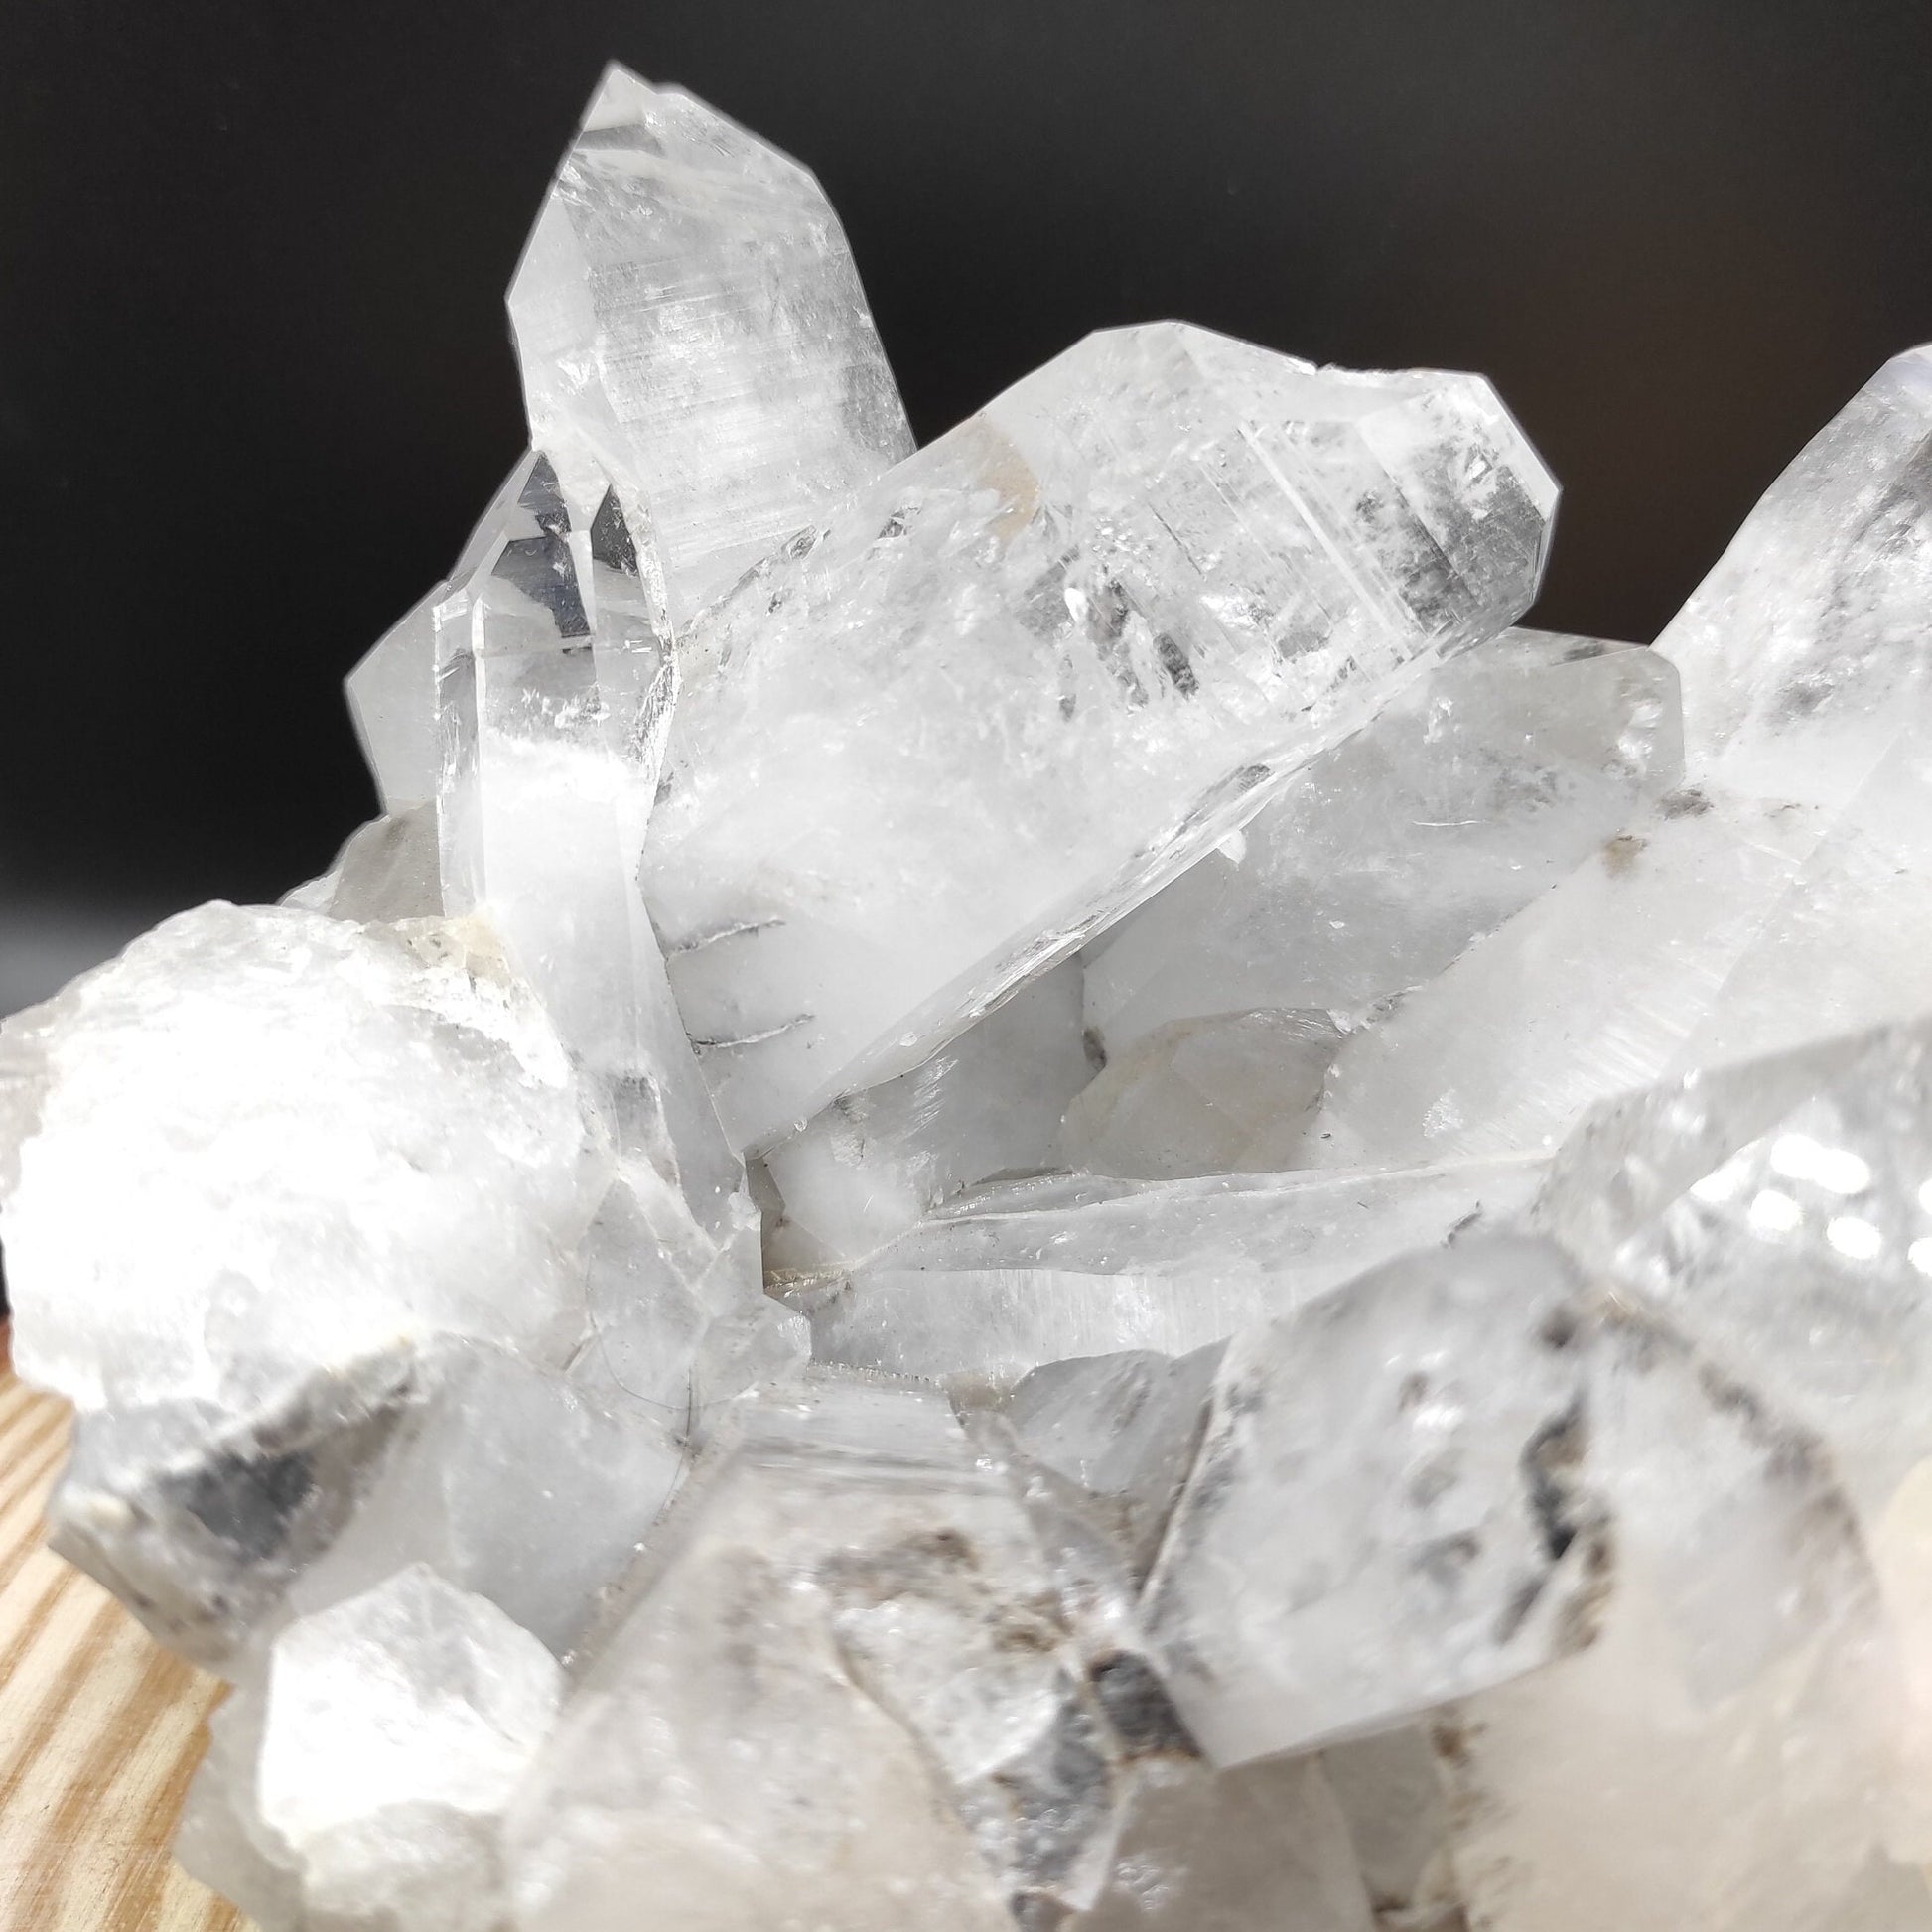 1.29kg XL Clear Quartz Specimen - Clear Quartz Statement Pieces from Belleza, Colombia - Large Quartz Crystal Clusters - Raw Quartz